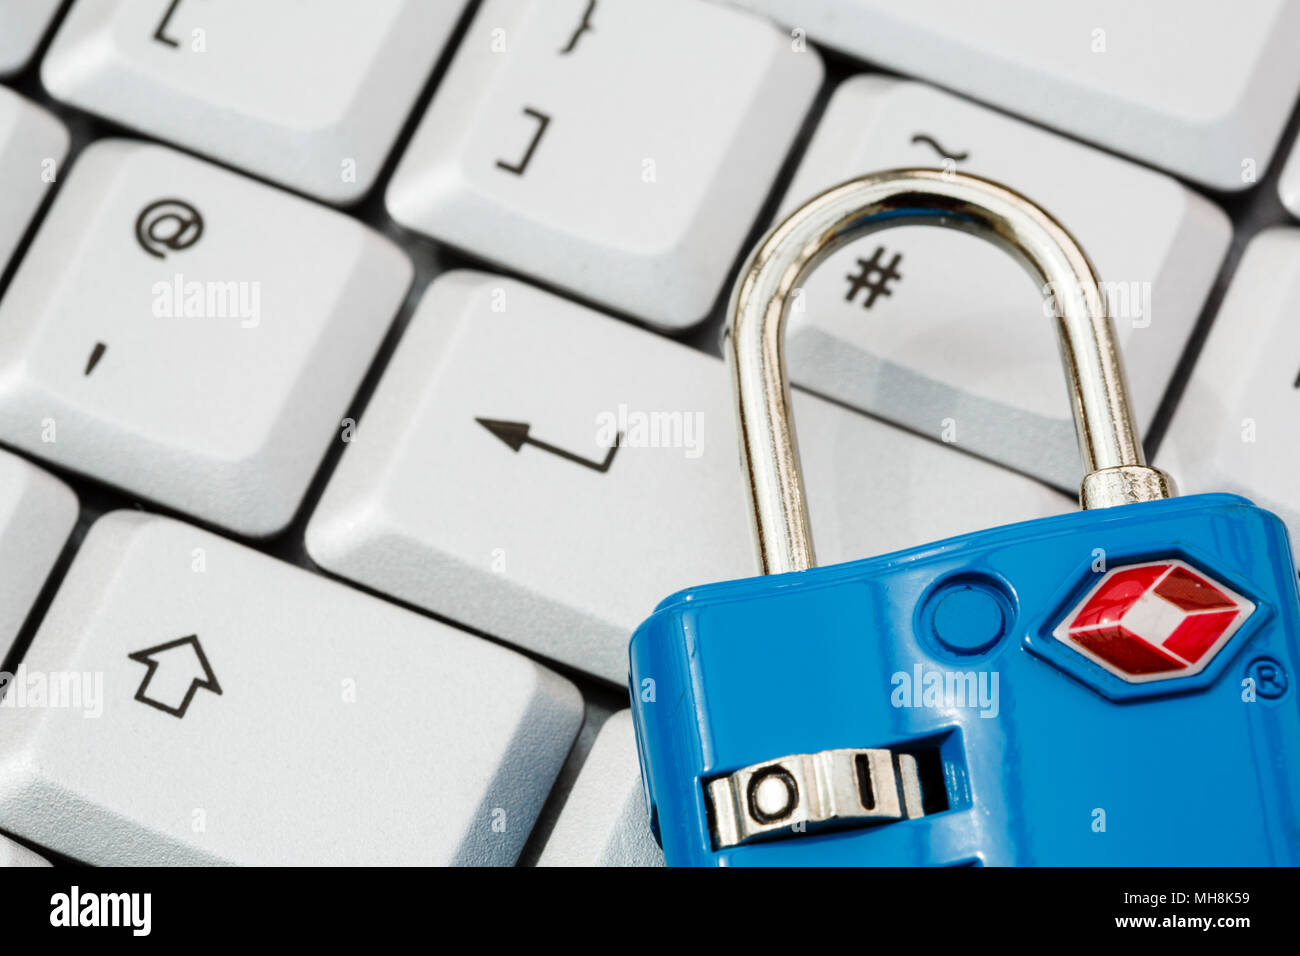 Un clavier avec touche entrée et un cadenas TSA pour illustrer la cyber-sécurité en ligne et la protection des données. L'accent sur cadenas. En Angleterre, Royaume-Uni, Angleterre Banque D'Images